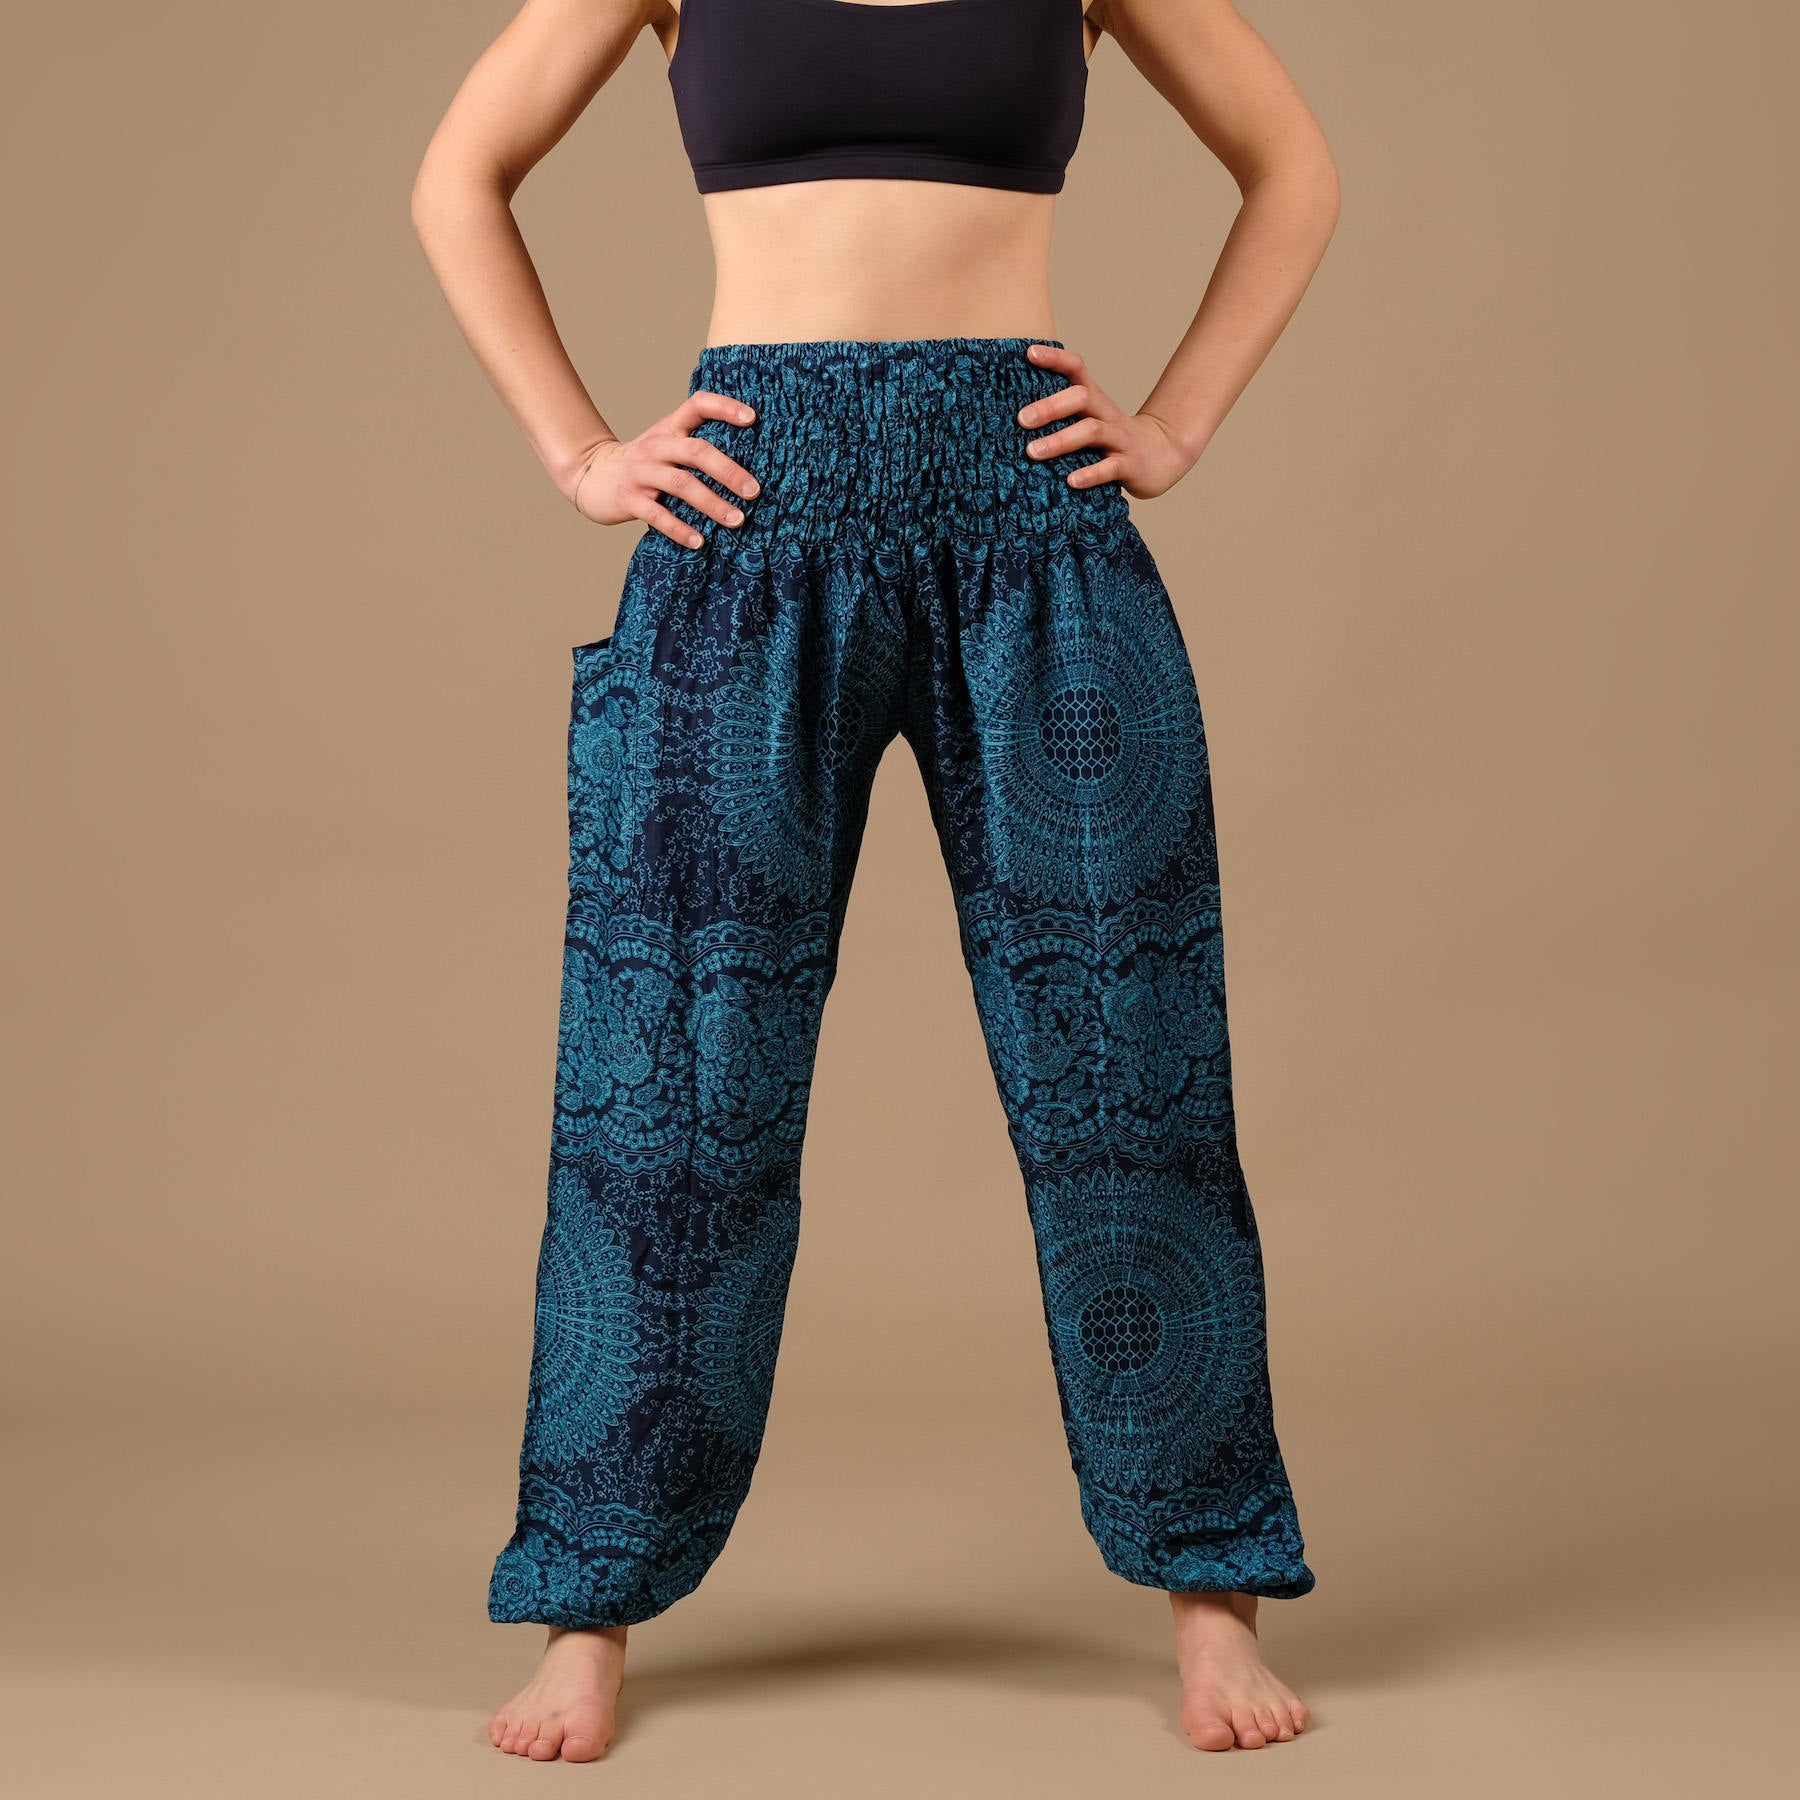 Pantalon de yoga harem Boho Pants Indian Summer bleu